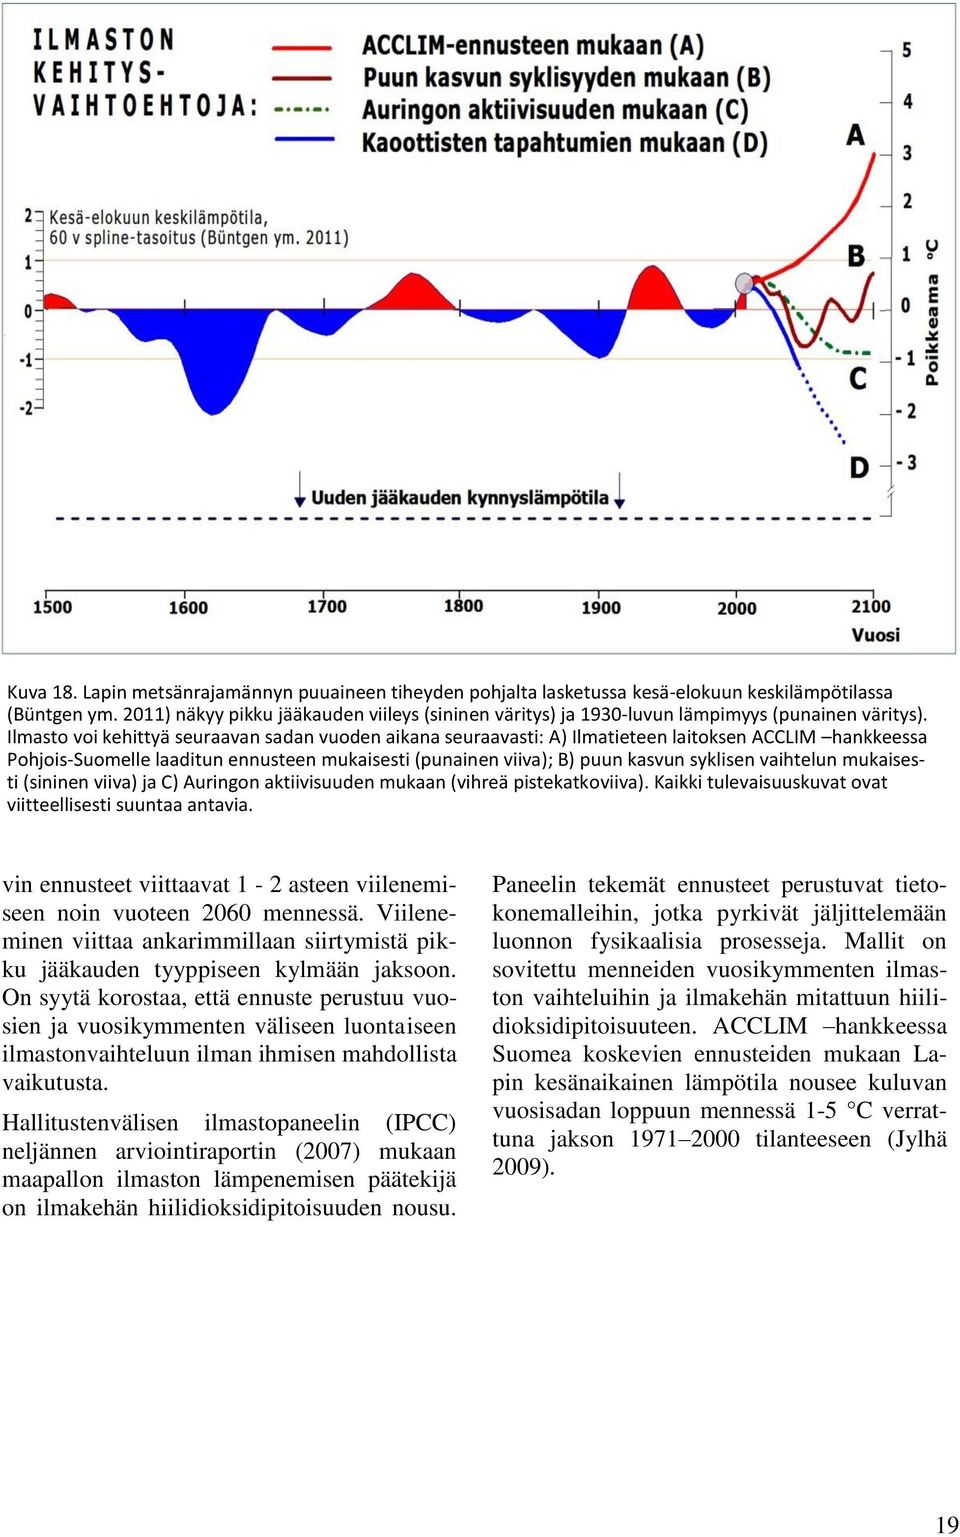 Ilmasto voi kehittyä seuraavan sadan vuoden aikana seuraavasti: A) Ilmatieteen laitoksen ACCLIM hankkeessa Pohjois-Suomelle laaditun ennusteen mukaisesti (punainen viiva); B) puun kasvun syklisen